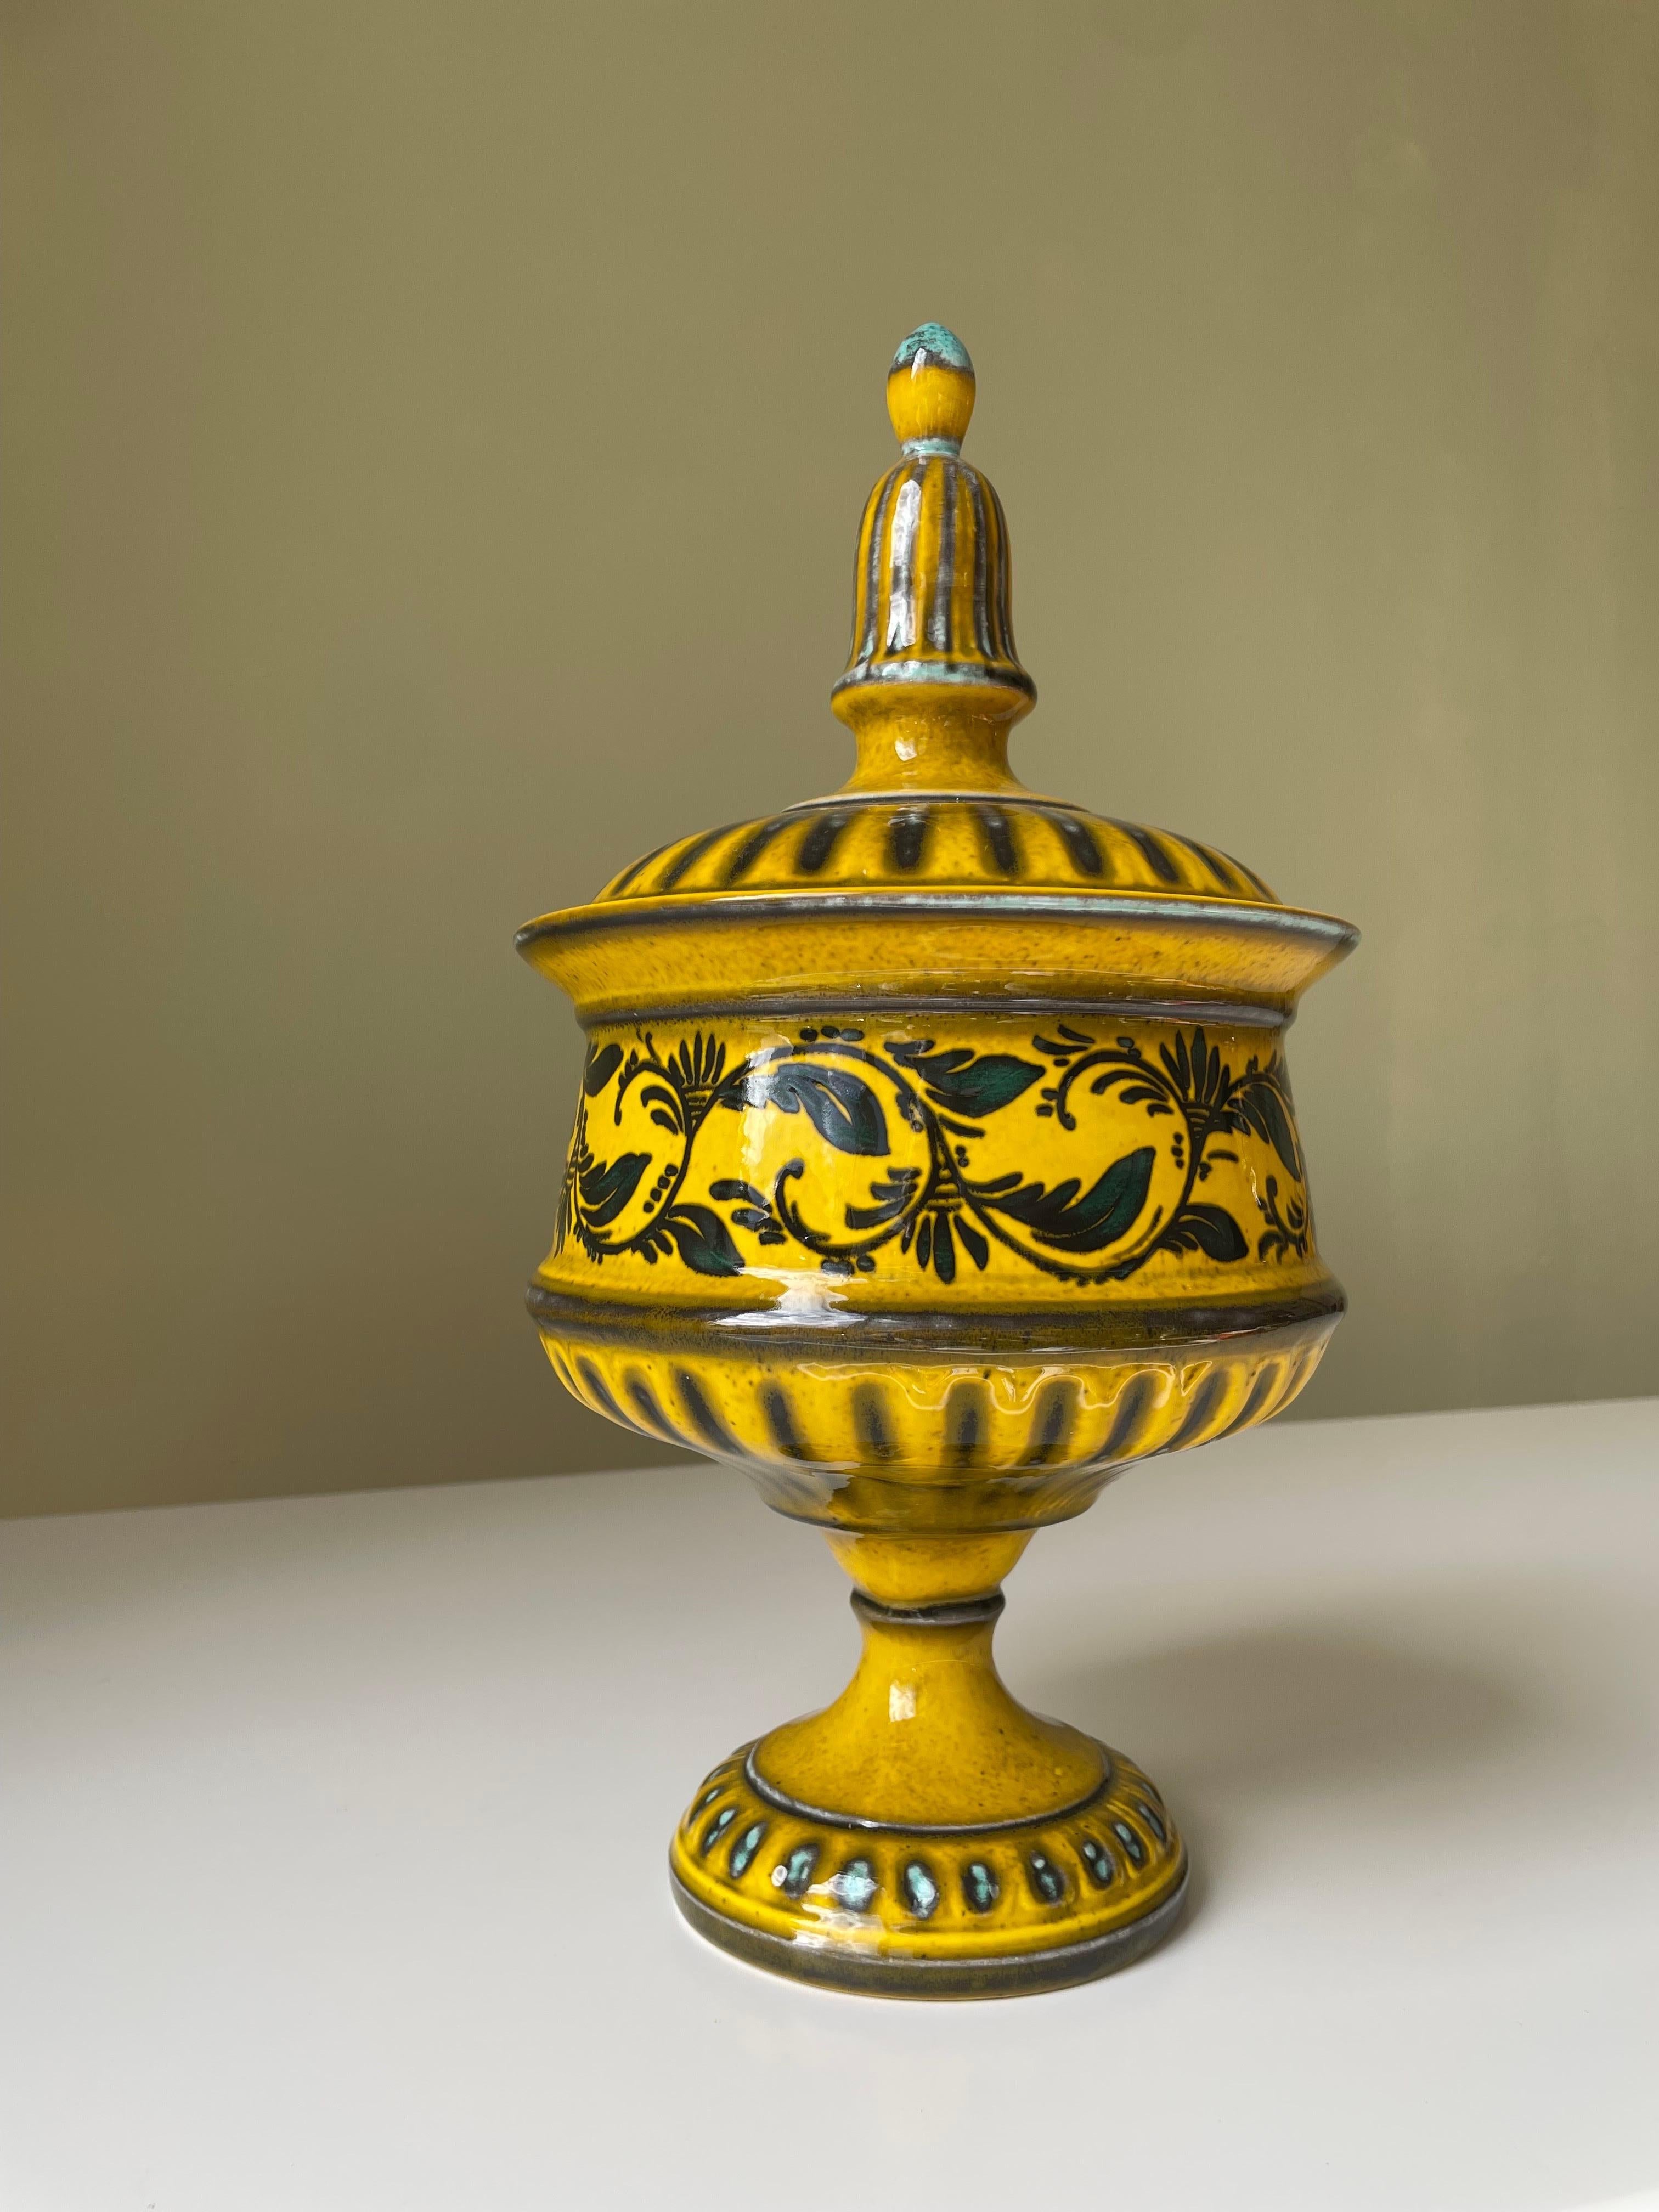 Handgefertigte italienische Jugendstil-Keramik-Urne mit Deckel, hergestellt von Sicas Sesto Fiorentino. Verziert mit warmem Toskana-Gelb, Dunkelgrün, Schwarz und Türkis mit organischen Blumen und grafischen, glänzenden Glasurdekoren. Gefäß unter dem